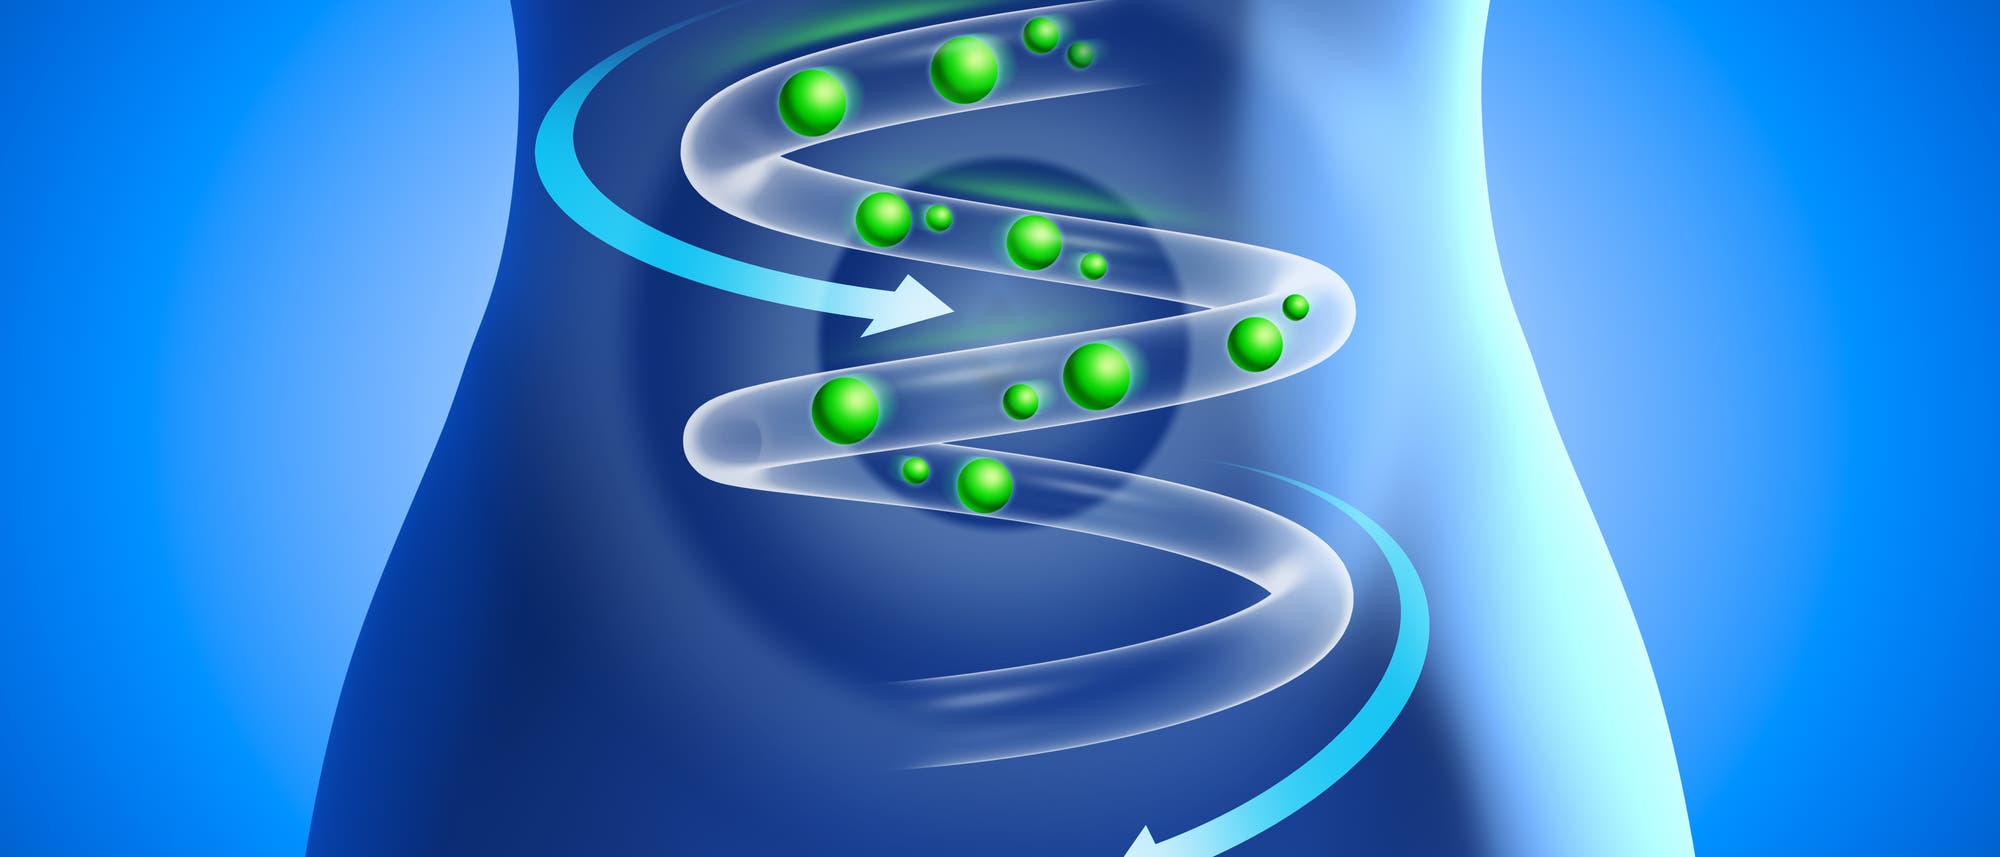 vereinfachte Darstellung der Verdauung in Form einer Spirale in einem weiblichen Körper